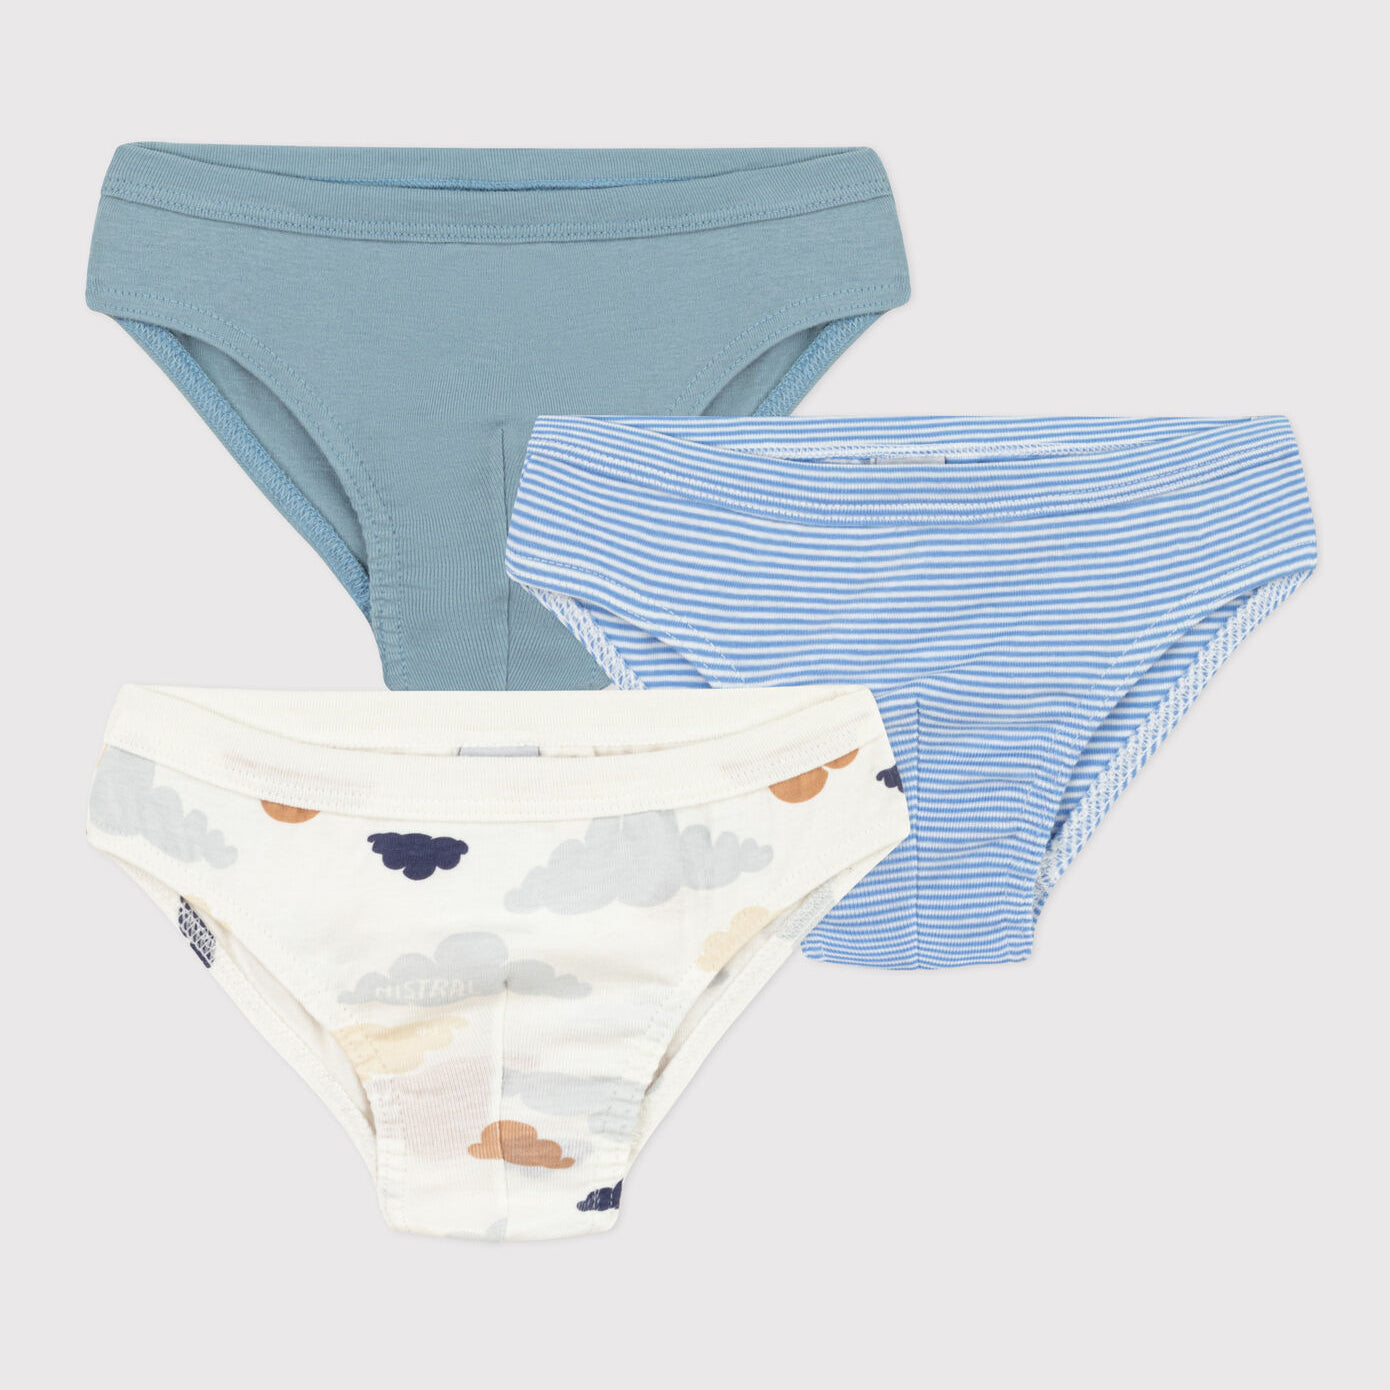 Boys Blue Cotton Underwear Set(3 Pack)